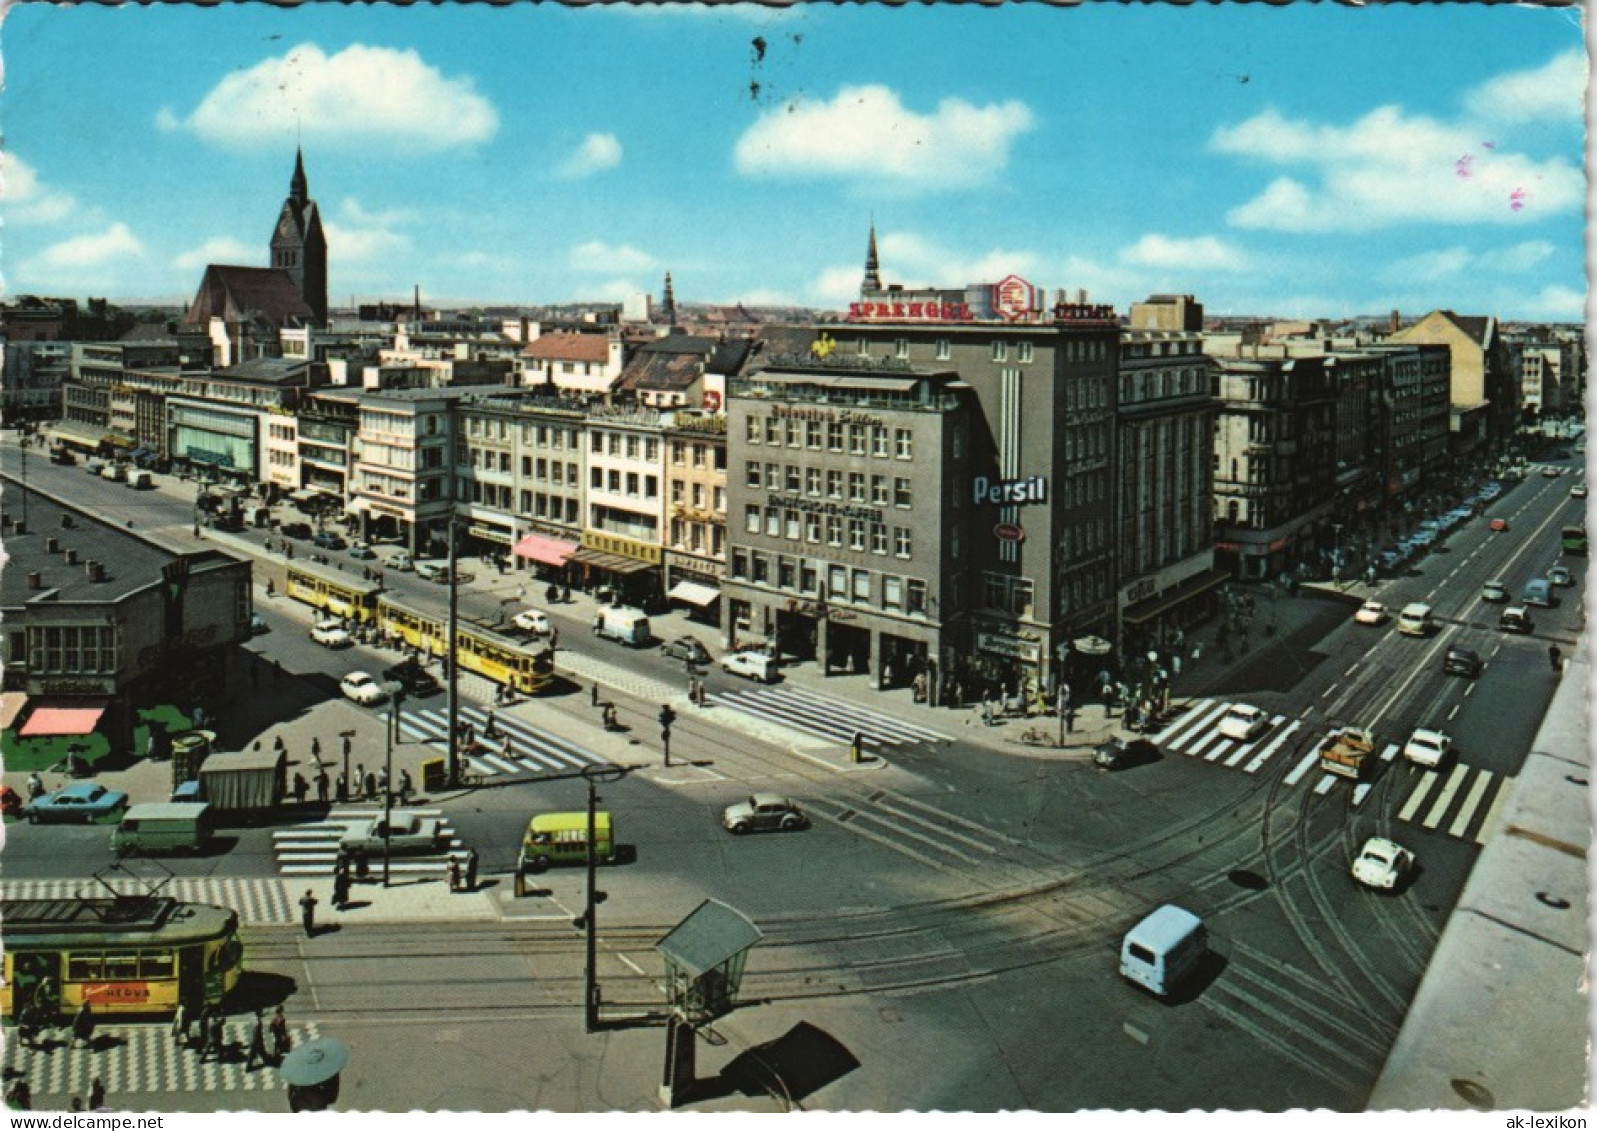 Ansichtskarte Hannover Stadtteilansicht City Panorama 1970 - Hannover